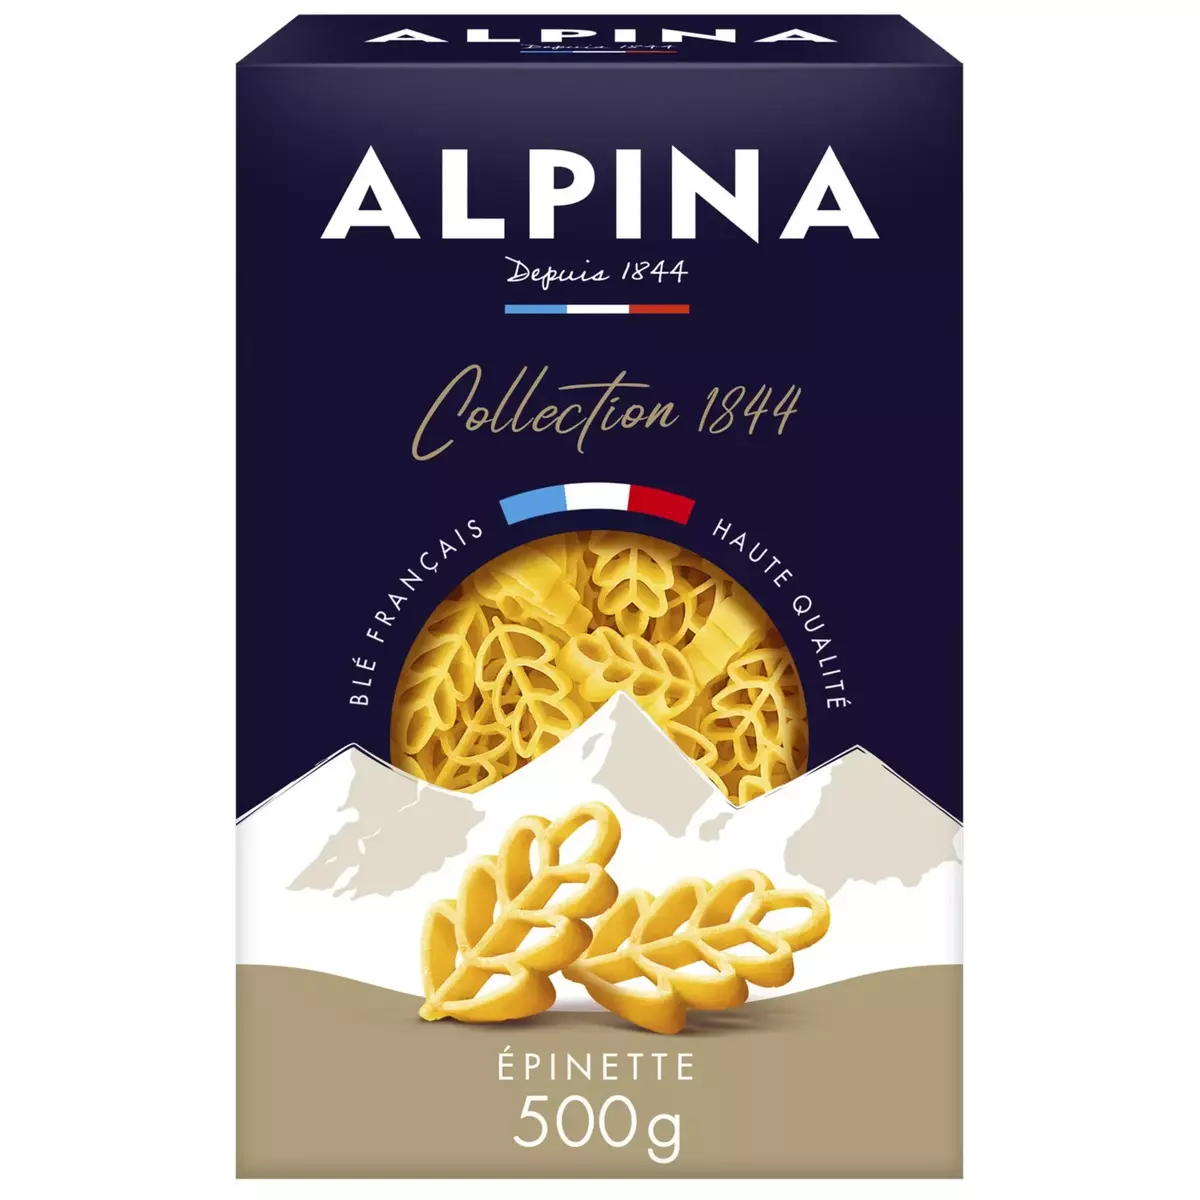 ALPINA Pâtes épinettes collection 1844 500g